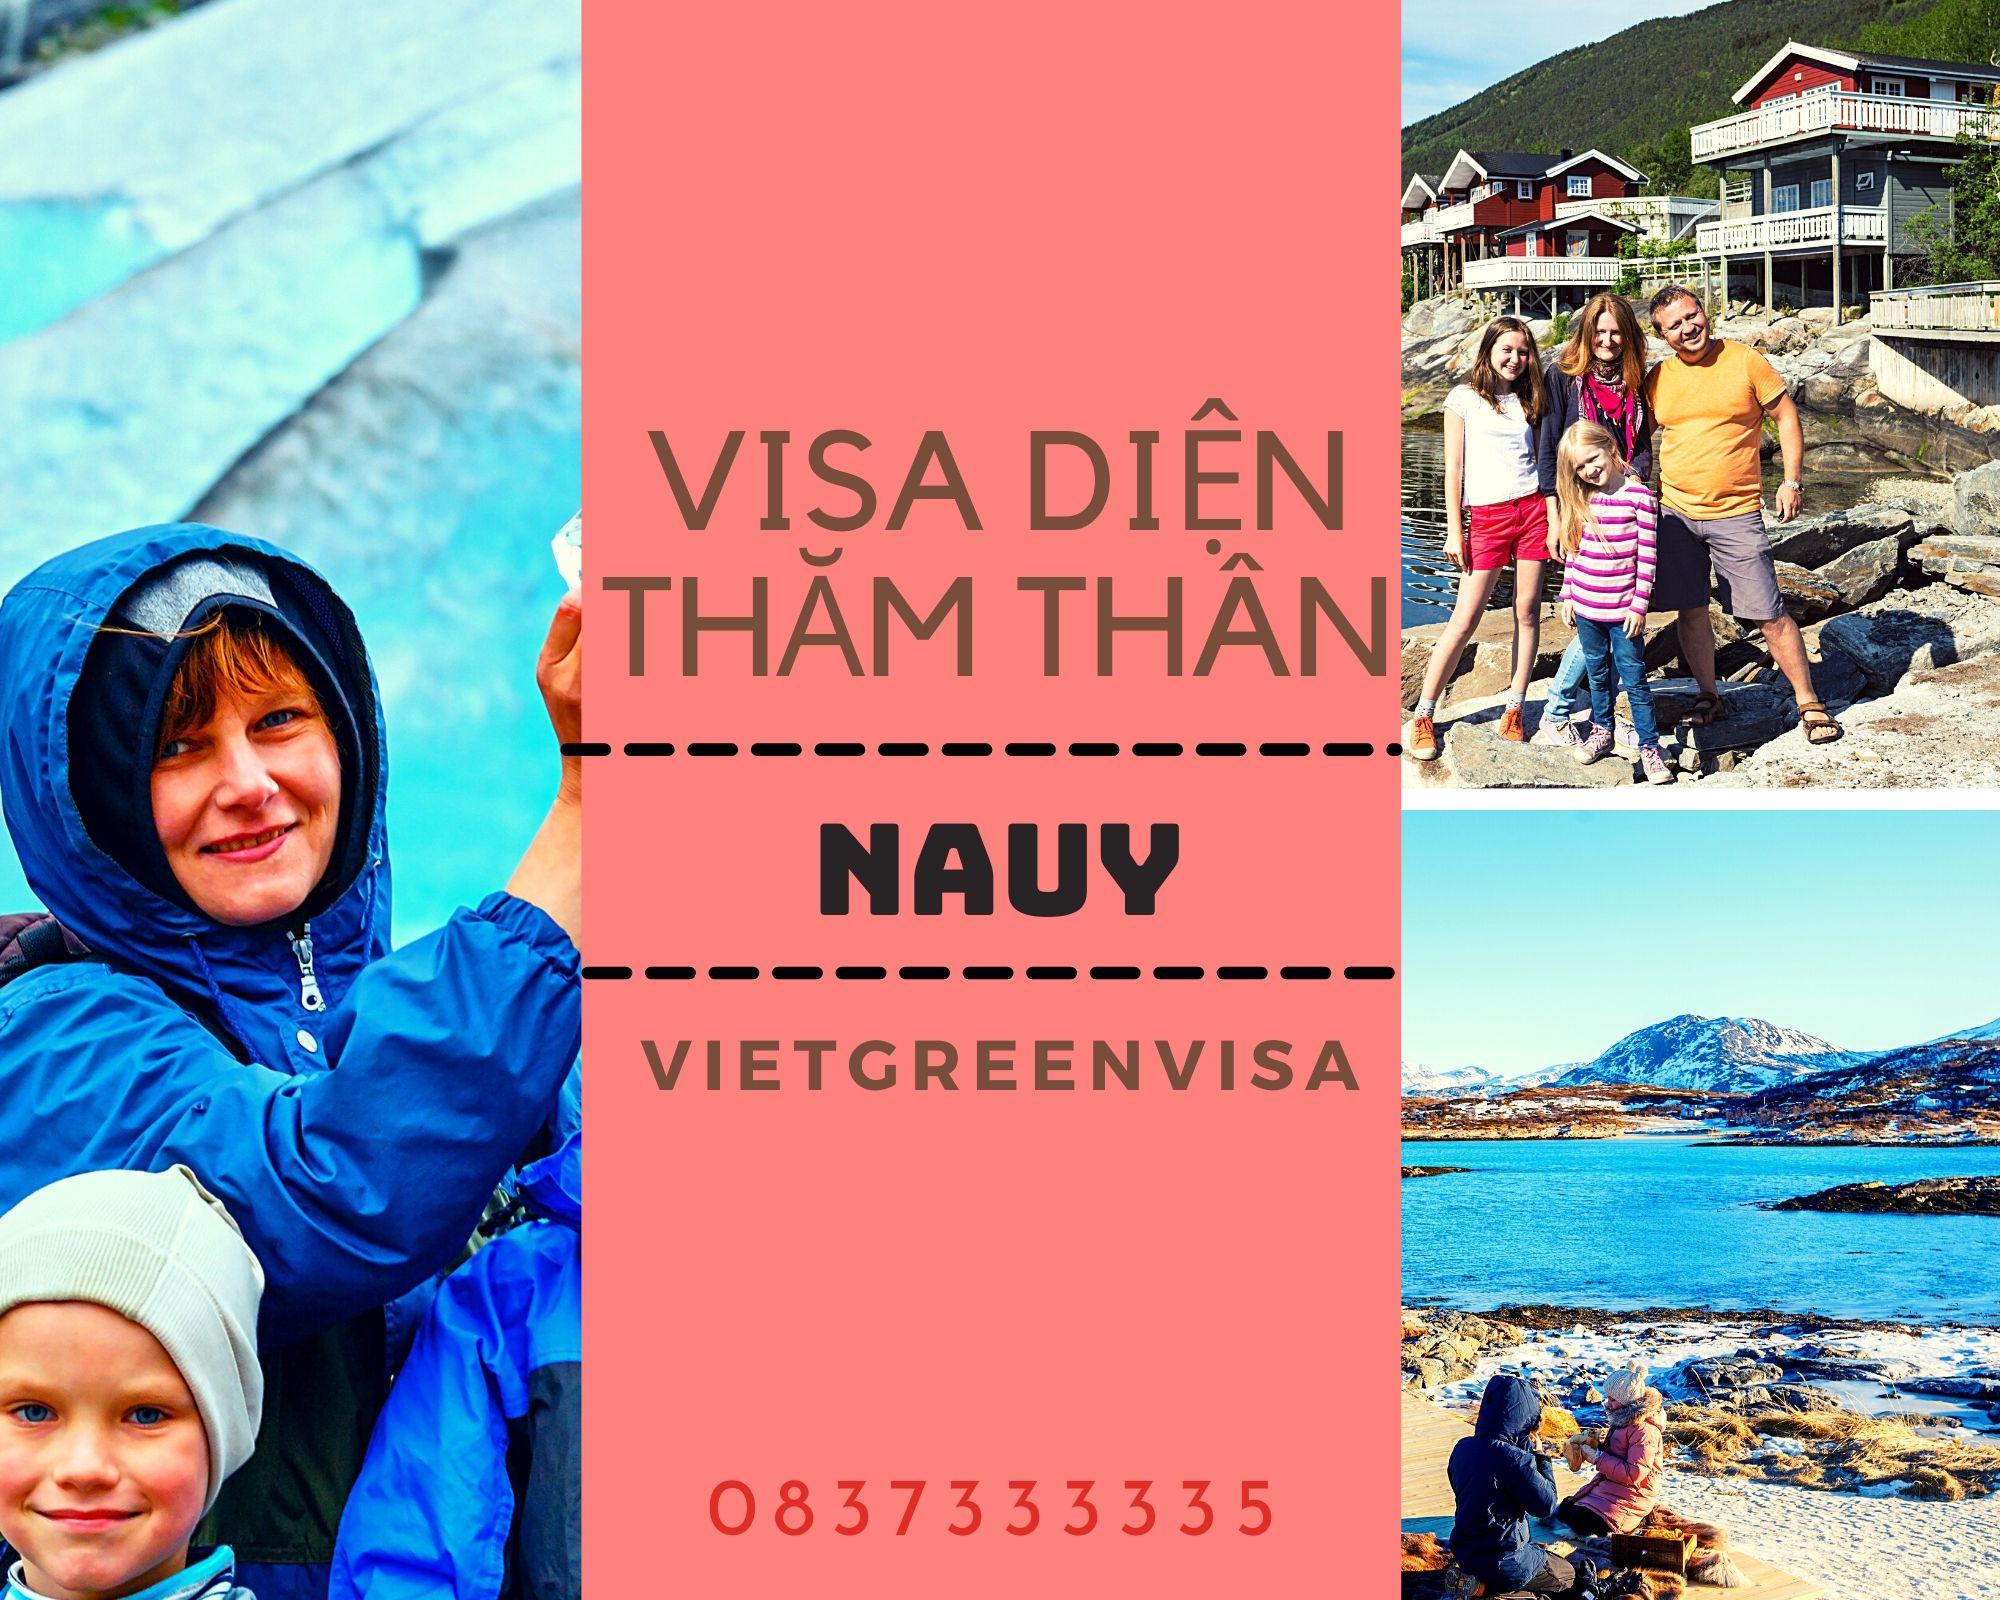 Dịch vụ xin visa đi Nauy diện thăm thân nhanh gọn